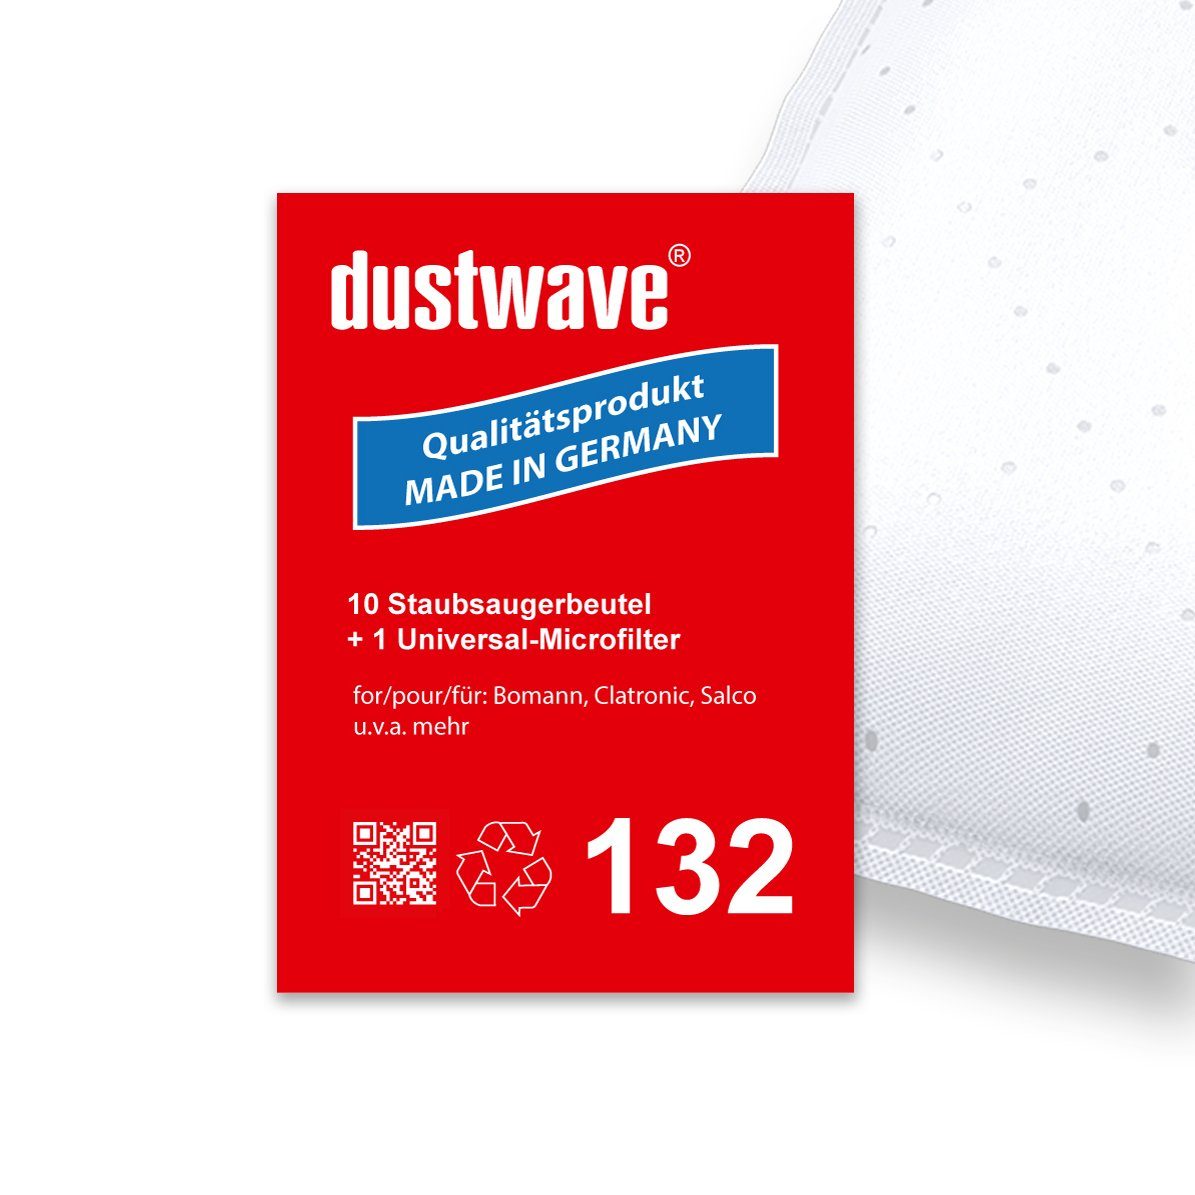 Dustwave Staubsaugerbeutel Sparpack, passend für Circon grey, 10 St., Sparpack, 10 Staubsaugerbeutel + 1 Hepa-Filter (ca. 15x15cm - zuschneidbar)